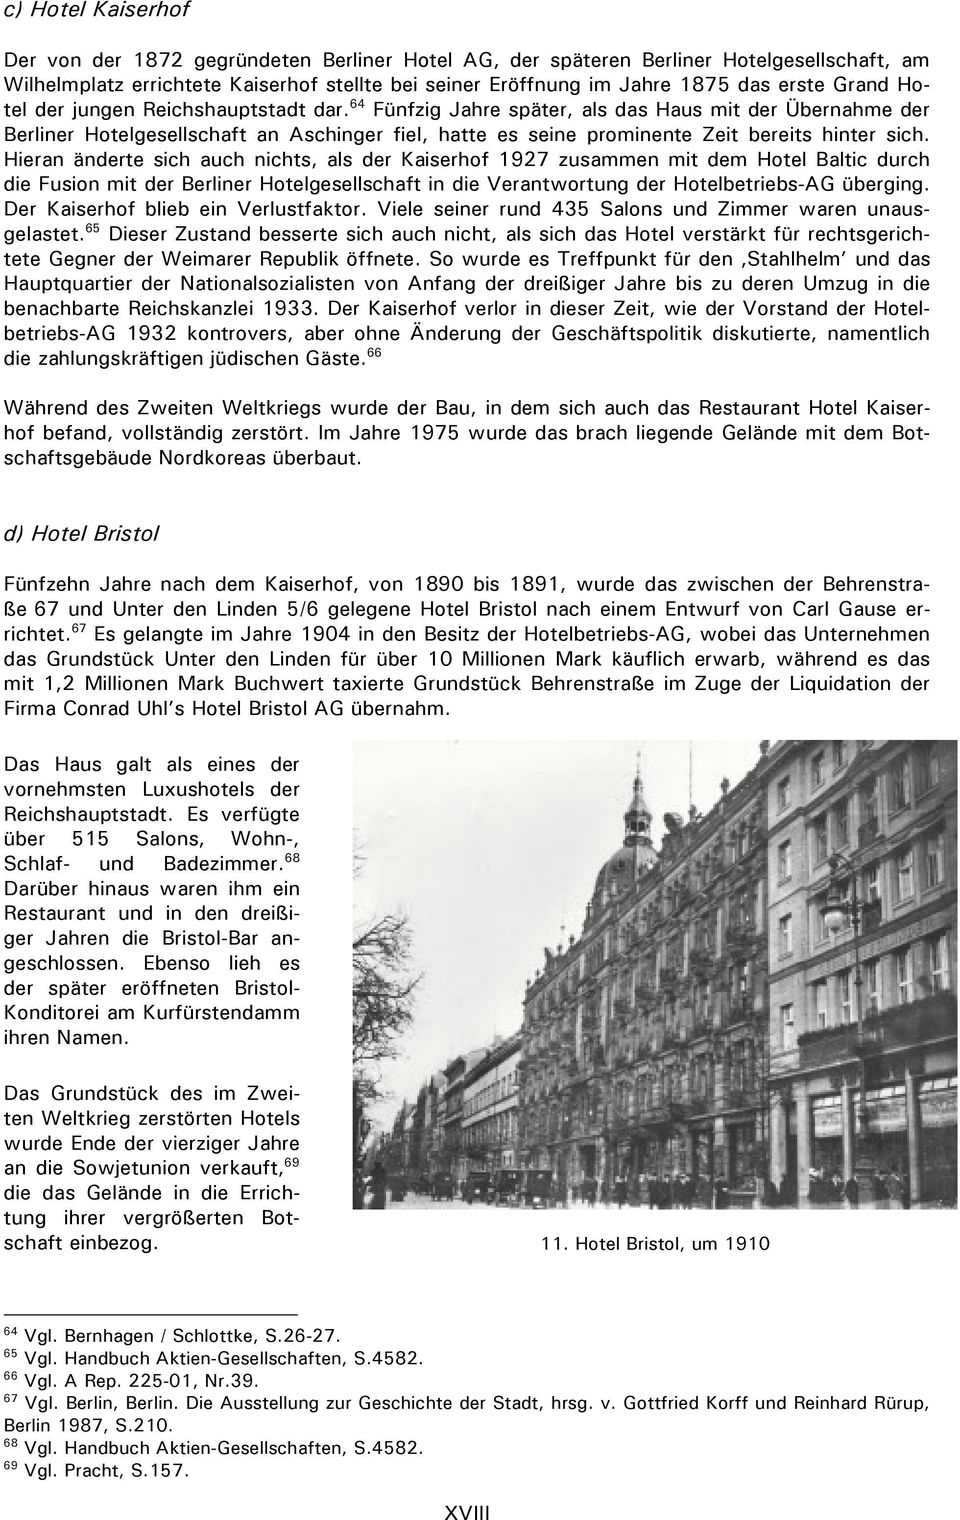 64 Fünfzig Jahre später, als das Haus mit der Übernahme der Berliner Hotelgesellschaft an Aschinger fiel, hatte es seine prominente Zeit bereits hinter sich.